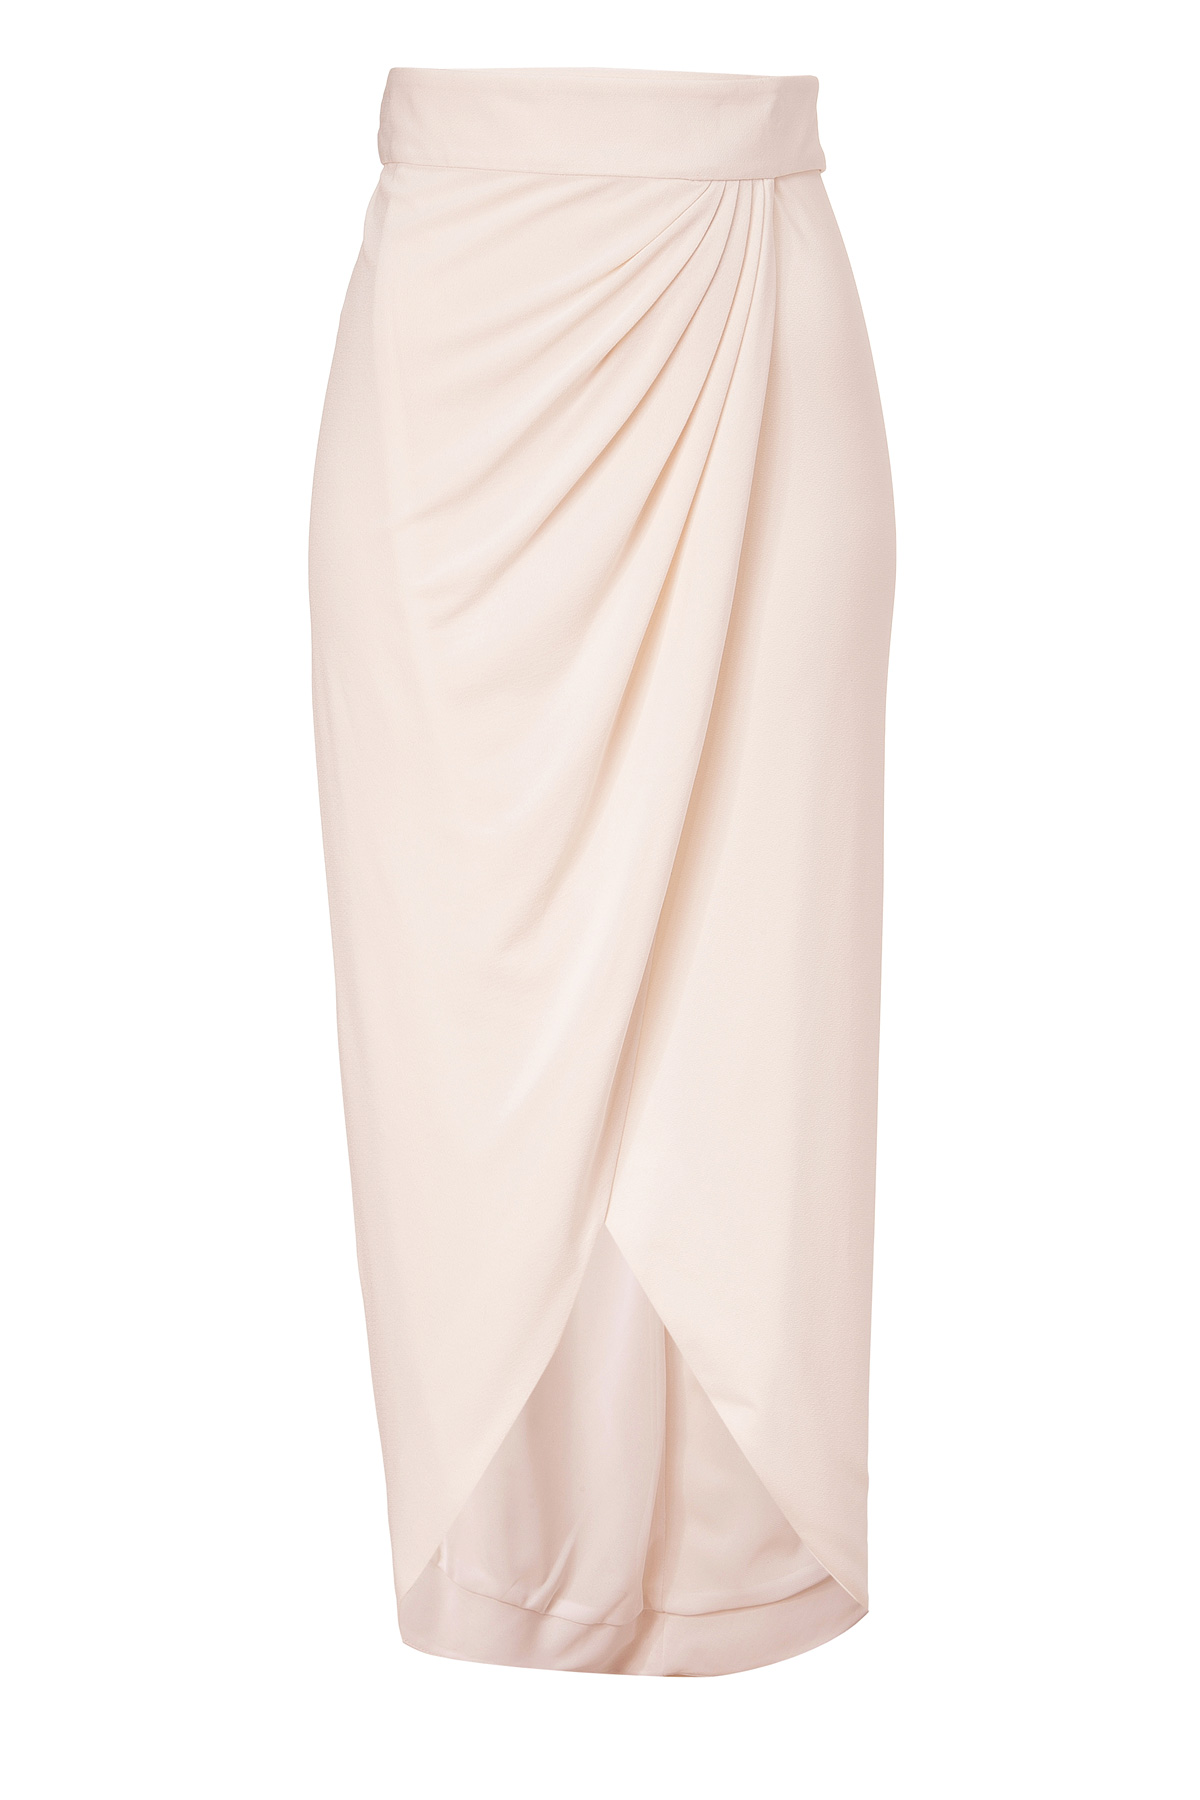 Lyst - Rachel Zoe Ecru Abbey Wrap Skirt in Pink